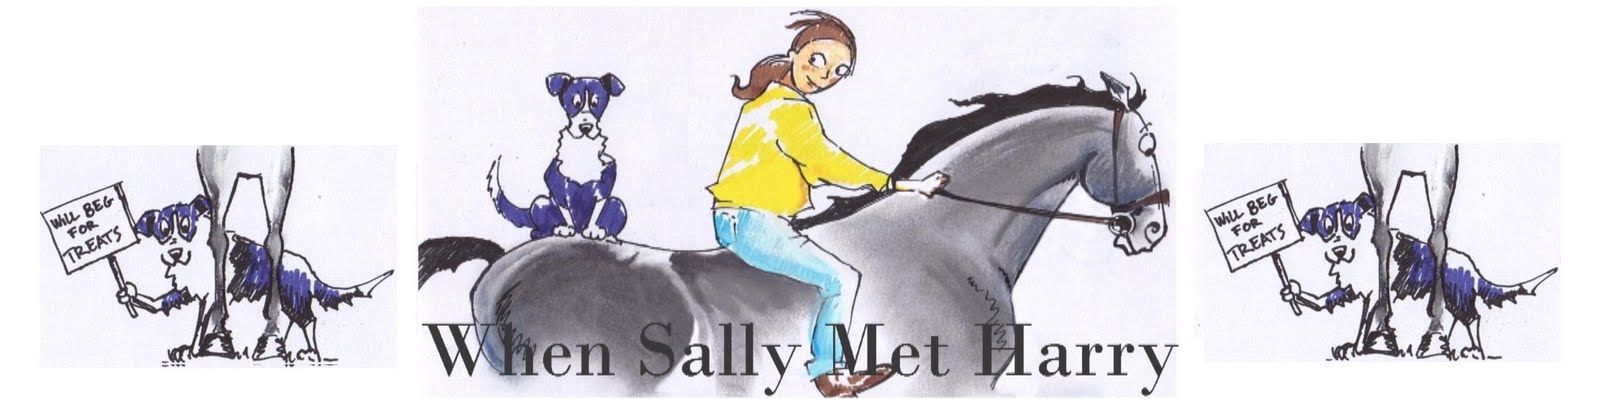 When Sally met Harry